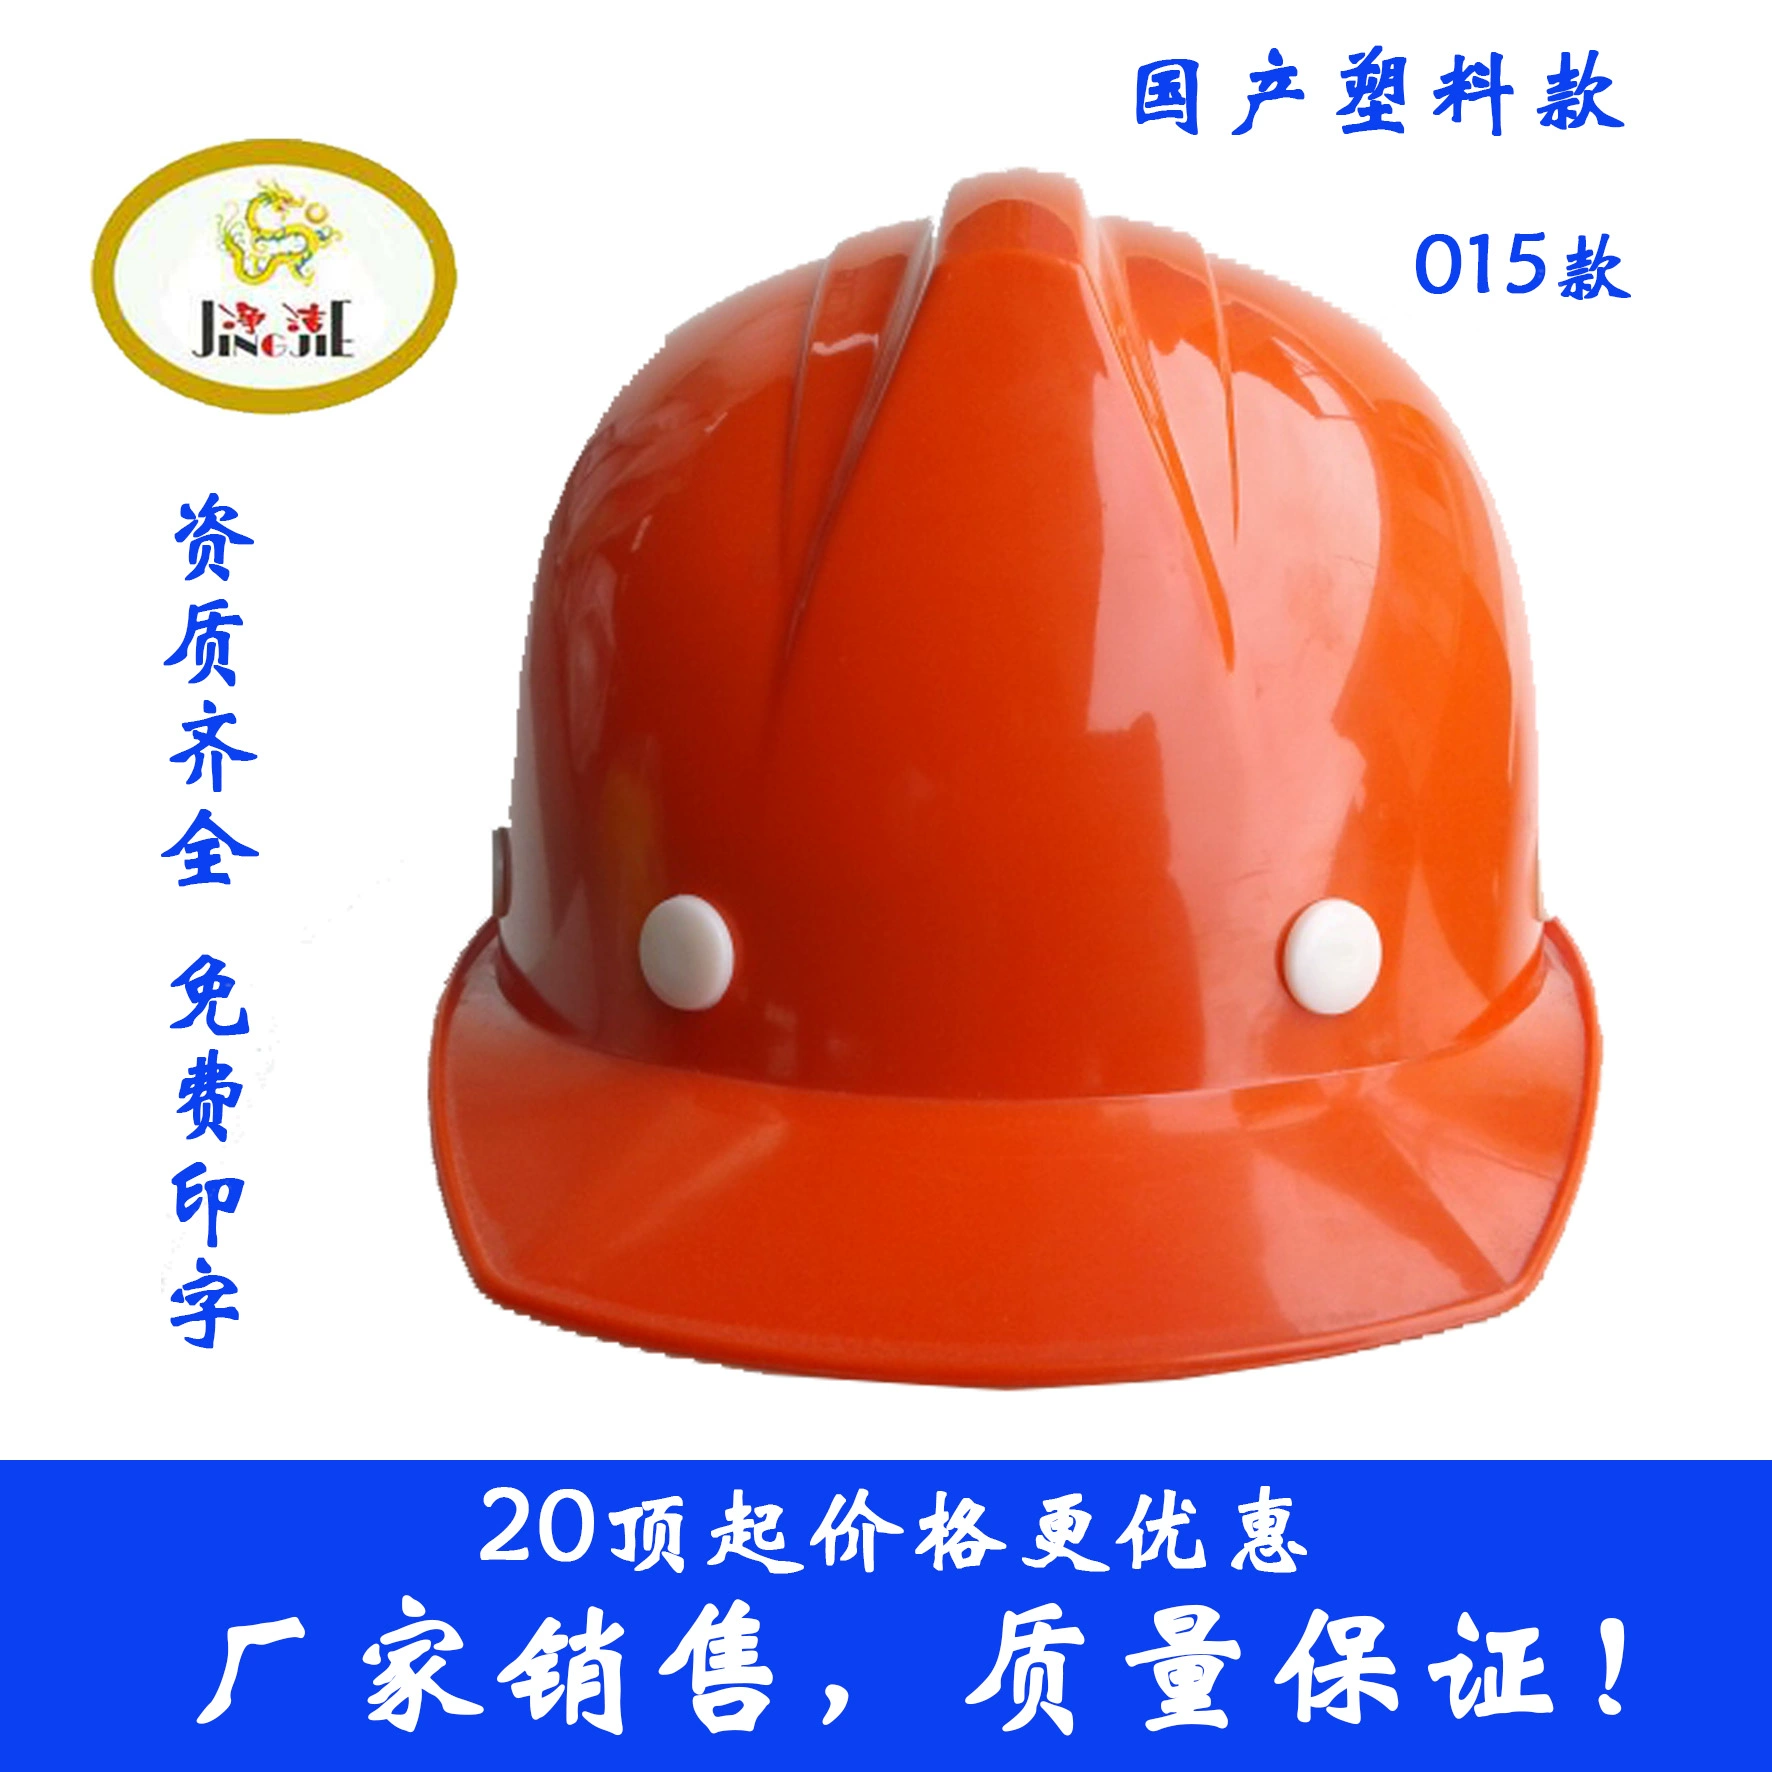 Mũ bảo hiểm công trường xây dựng Jingjie thương hiệu nhựa trong nước đệm chống va đập một sườn 015 A có núm khóa tời mũ bảo hộ công trường mũ vải công nhân 